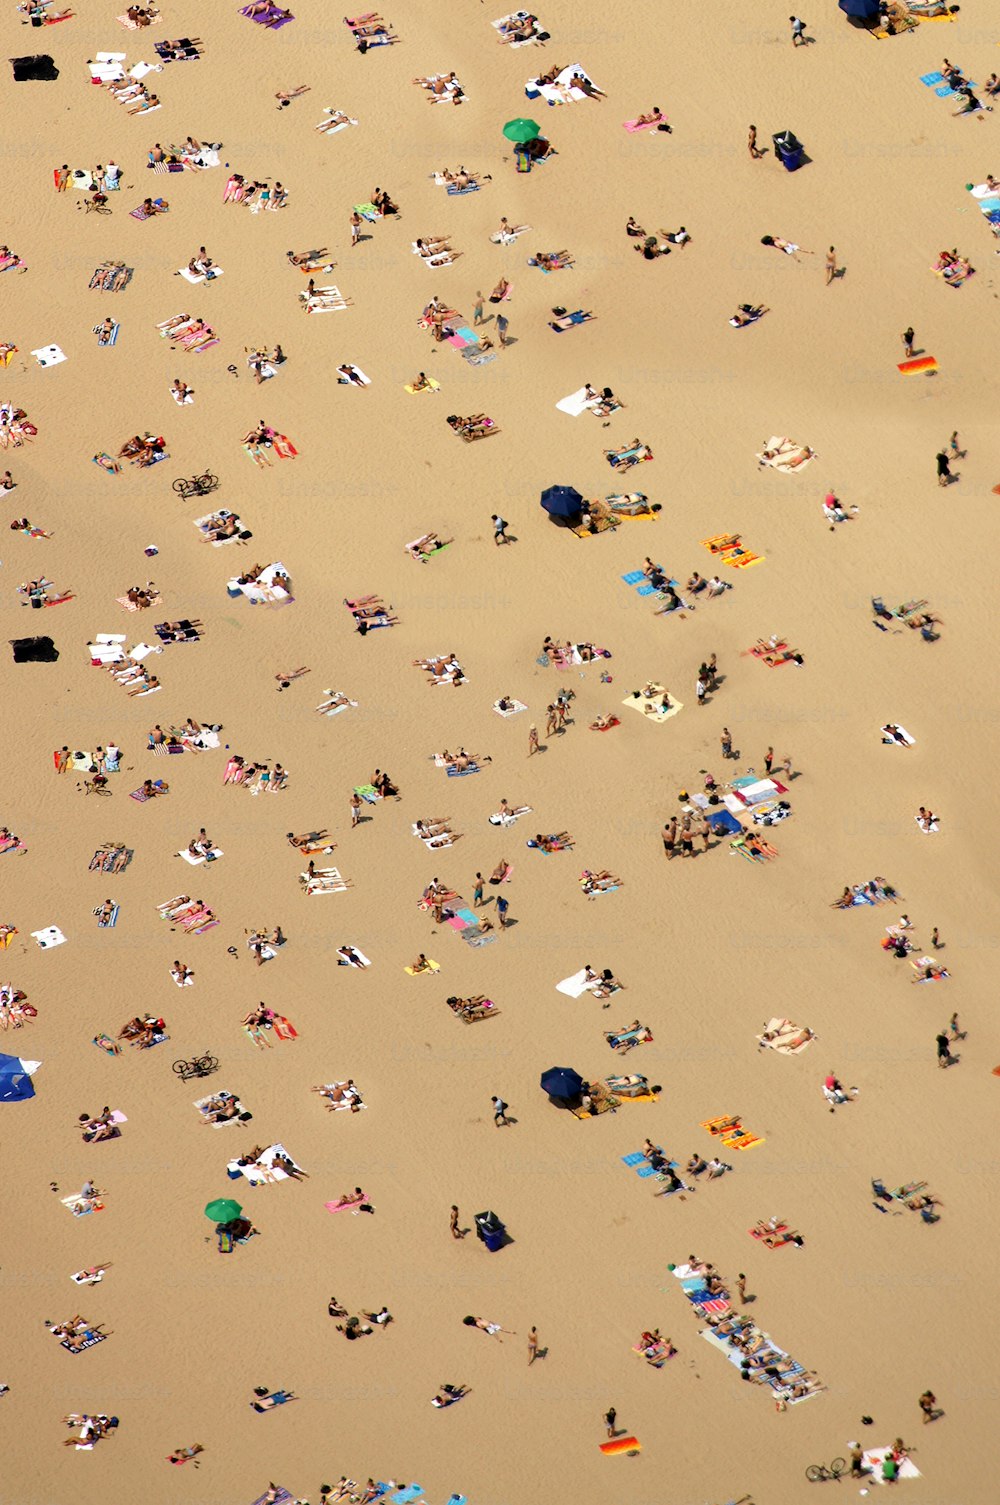 Un gran grupo de personas tumbadas en la cima de una playa de arena